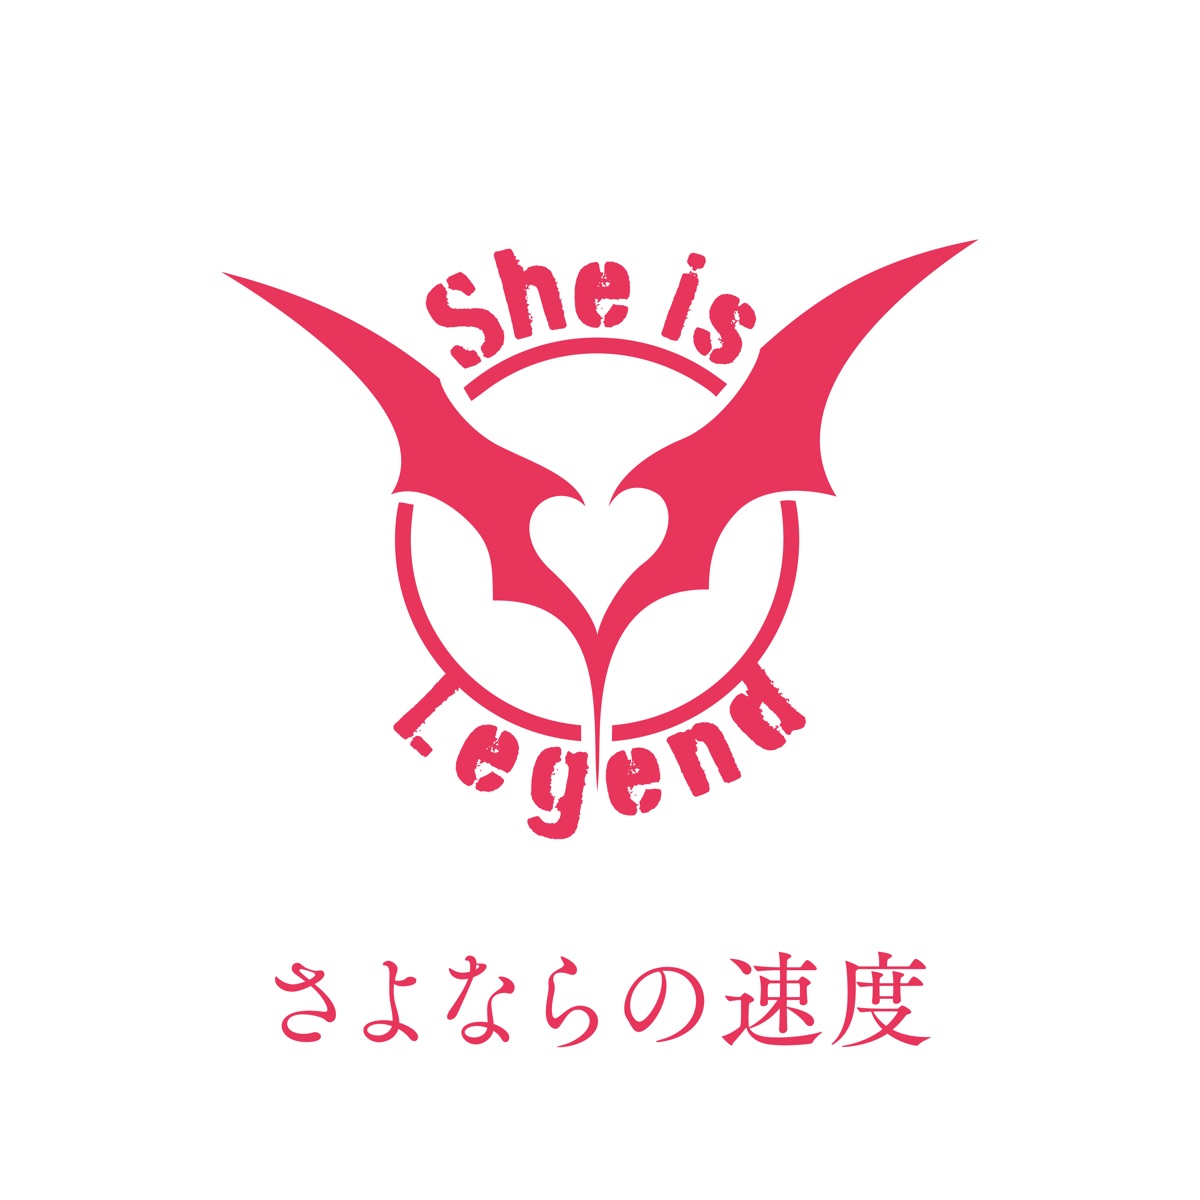 Cover art for『She is Legend - Sayonara no Sokudo』from the release『Sayonara no Sokudo』